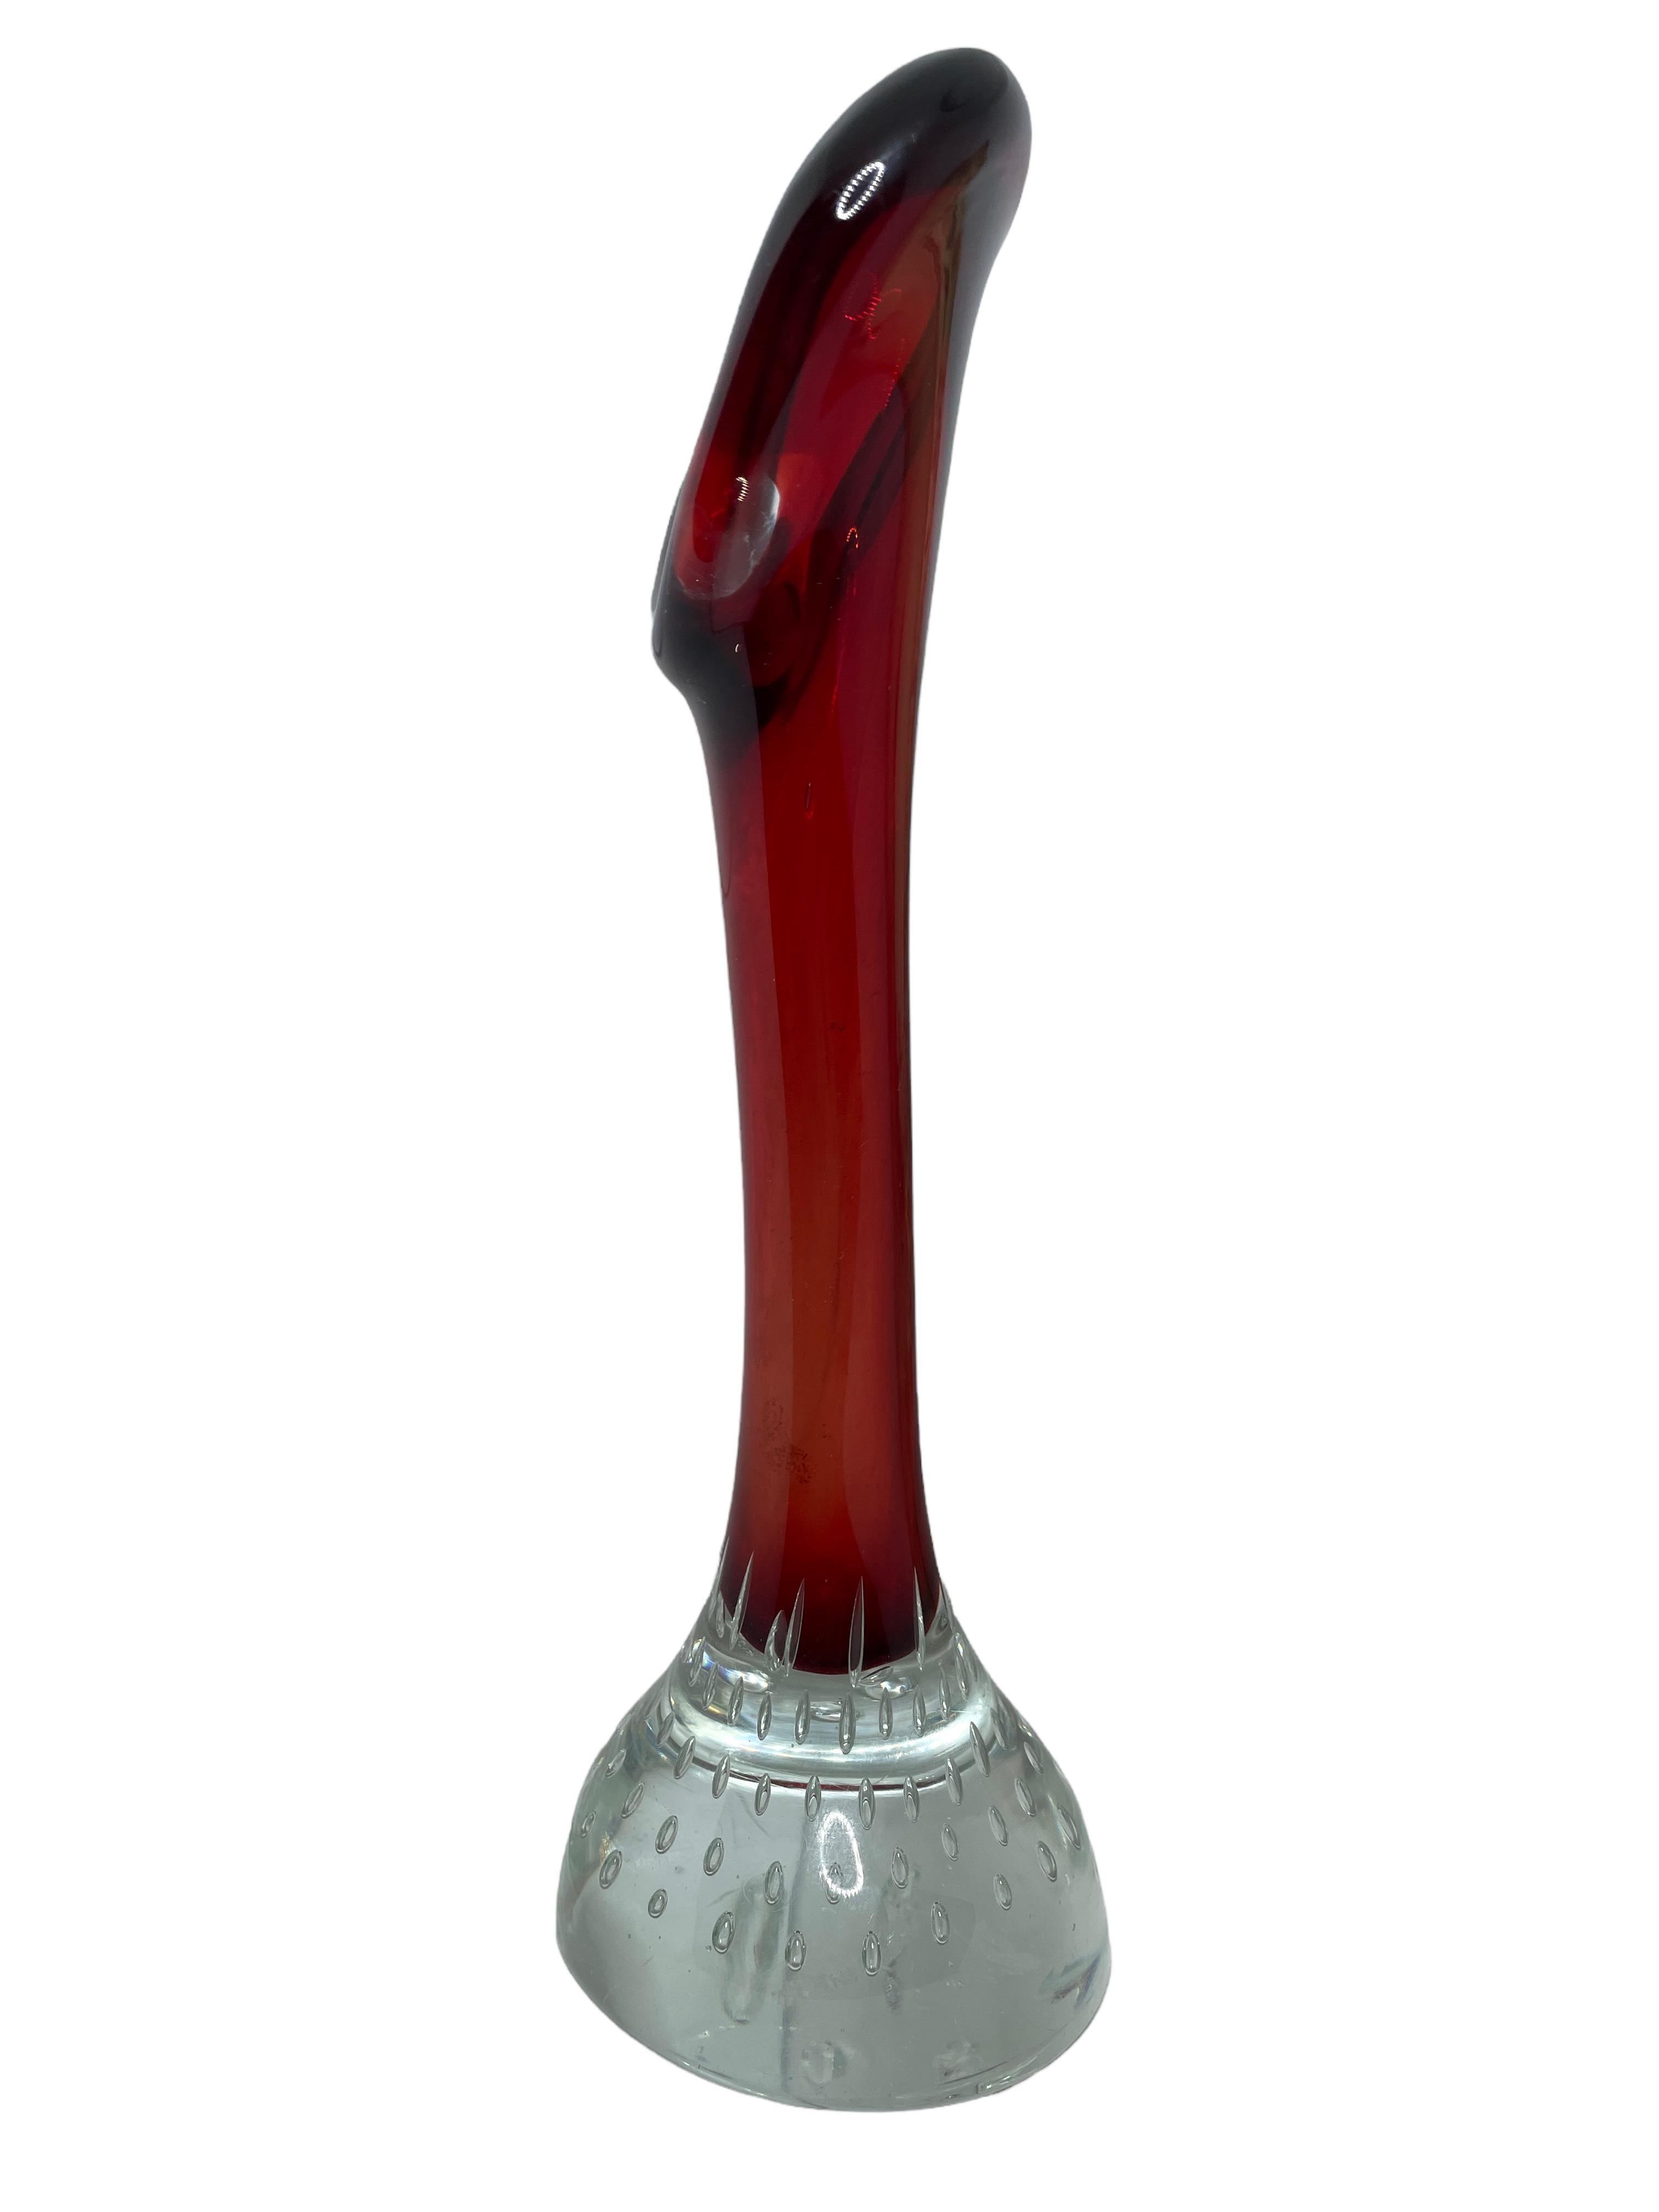 murano glass flower vase